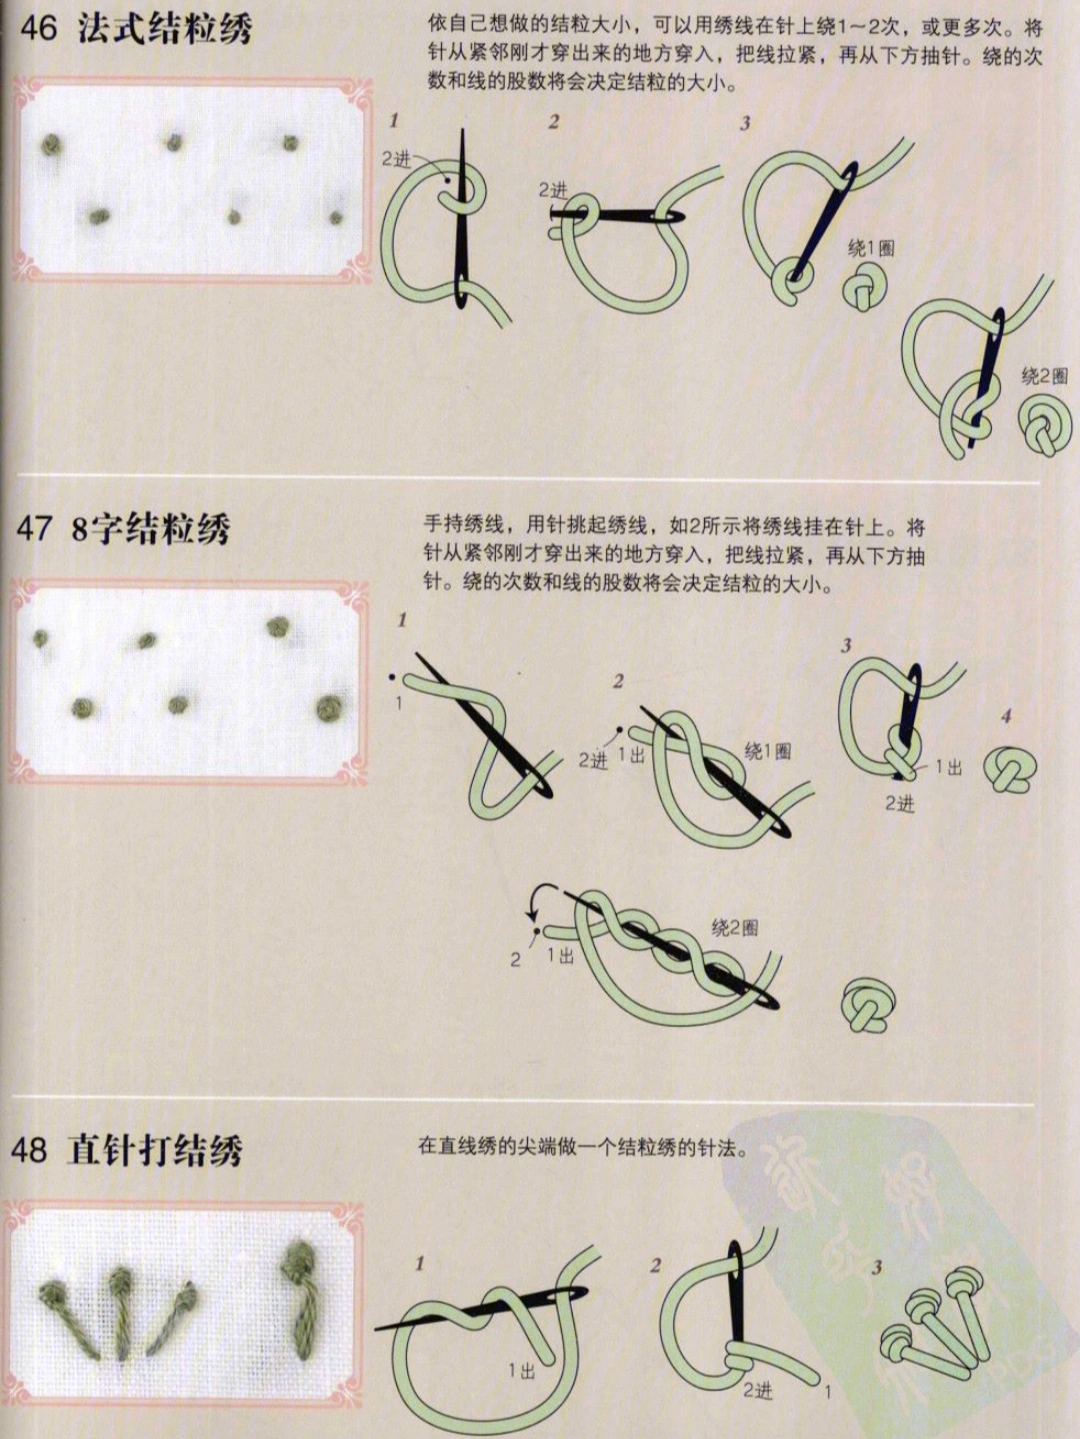 湘绣代表性针法图片